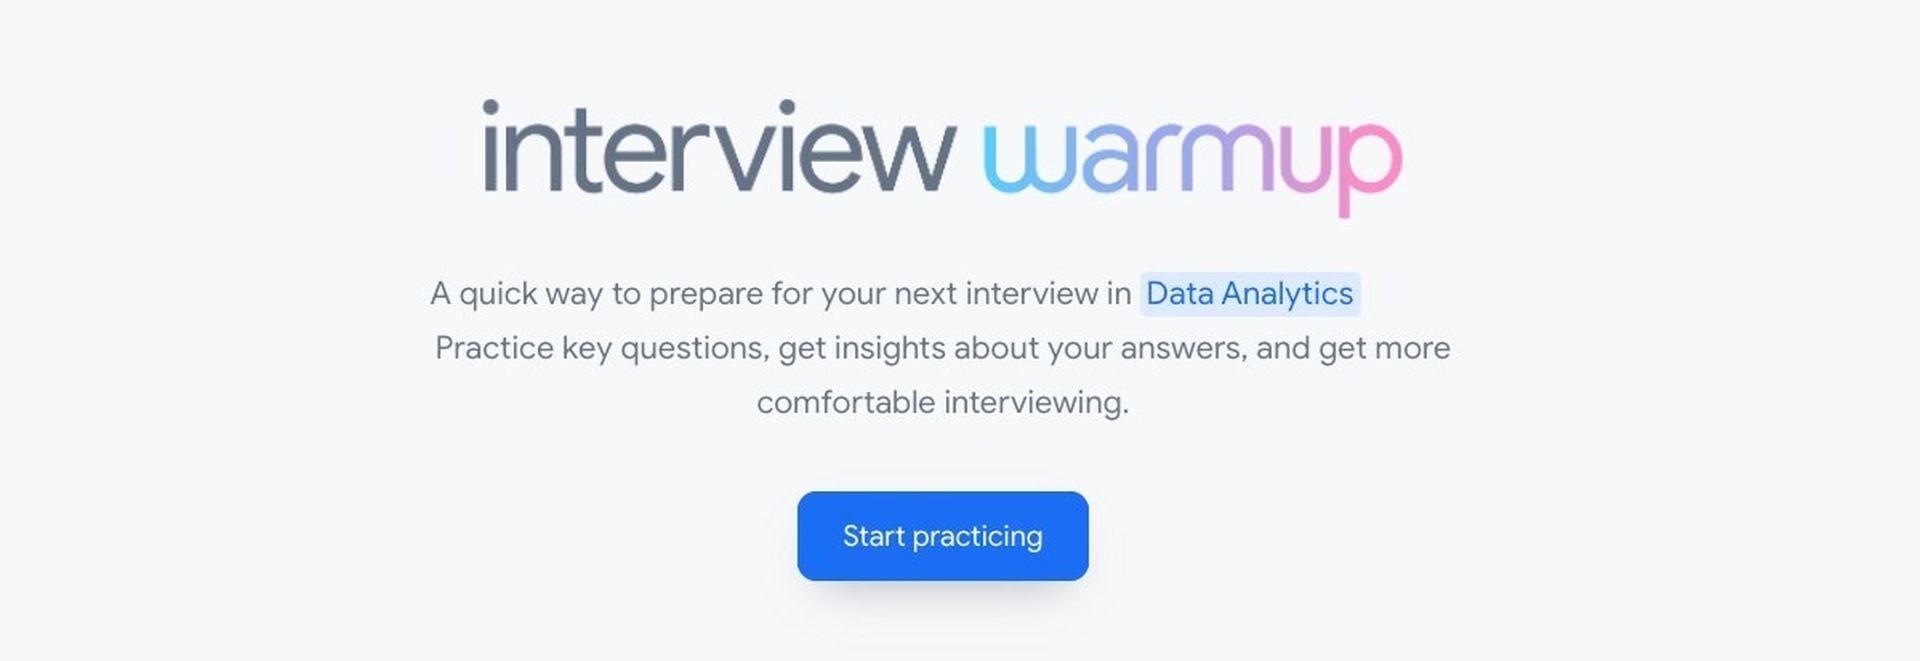 Jeśli czujesz się zdenerwowany przed rozmową o pracę, nowe narzędzie AI o nazwie Google Interview Warmup pomoże Ci przećwiczyć wcześniej.  Google ma teraz narzędzie, które pomaga kandydatom ćwiczyć rozmowy kwalifikacyjne.  To prawda, że ​​rozmowy kwalifikacyjne mogą być stresujące.  Możesz ćwiczyć i być lepiej przygotowanym przed pójściem na rozmowę kwalifikacyjną dzięki nowemu narzędziu Google.